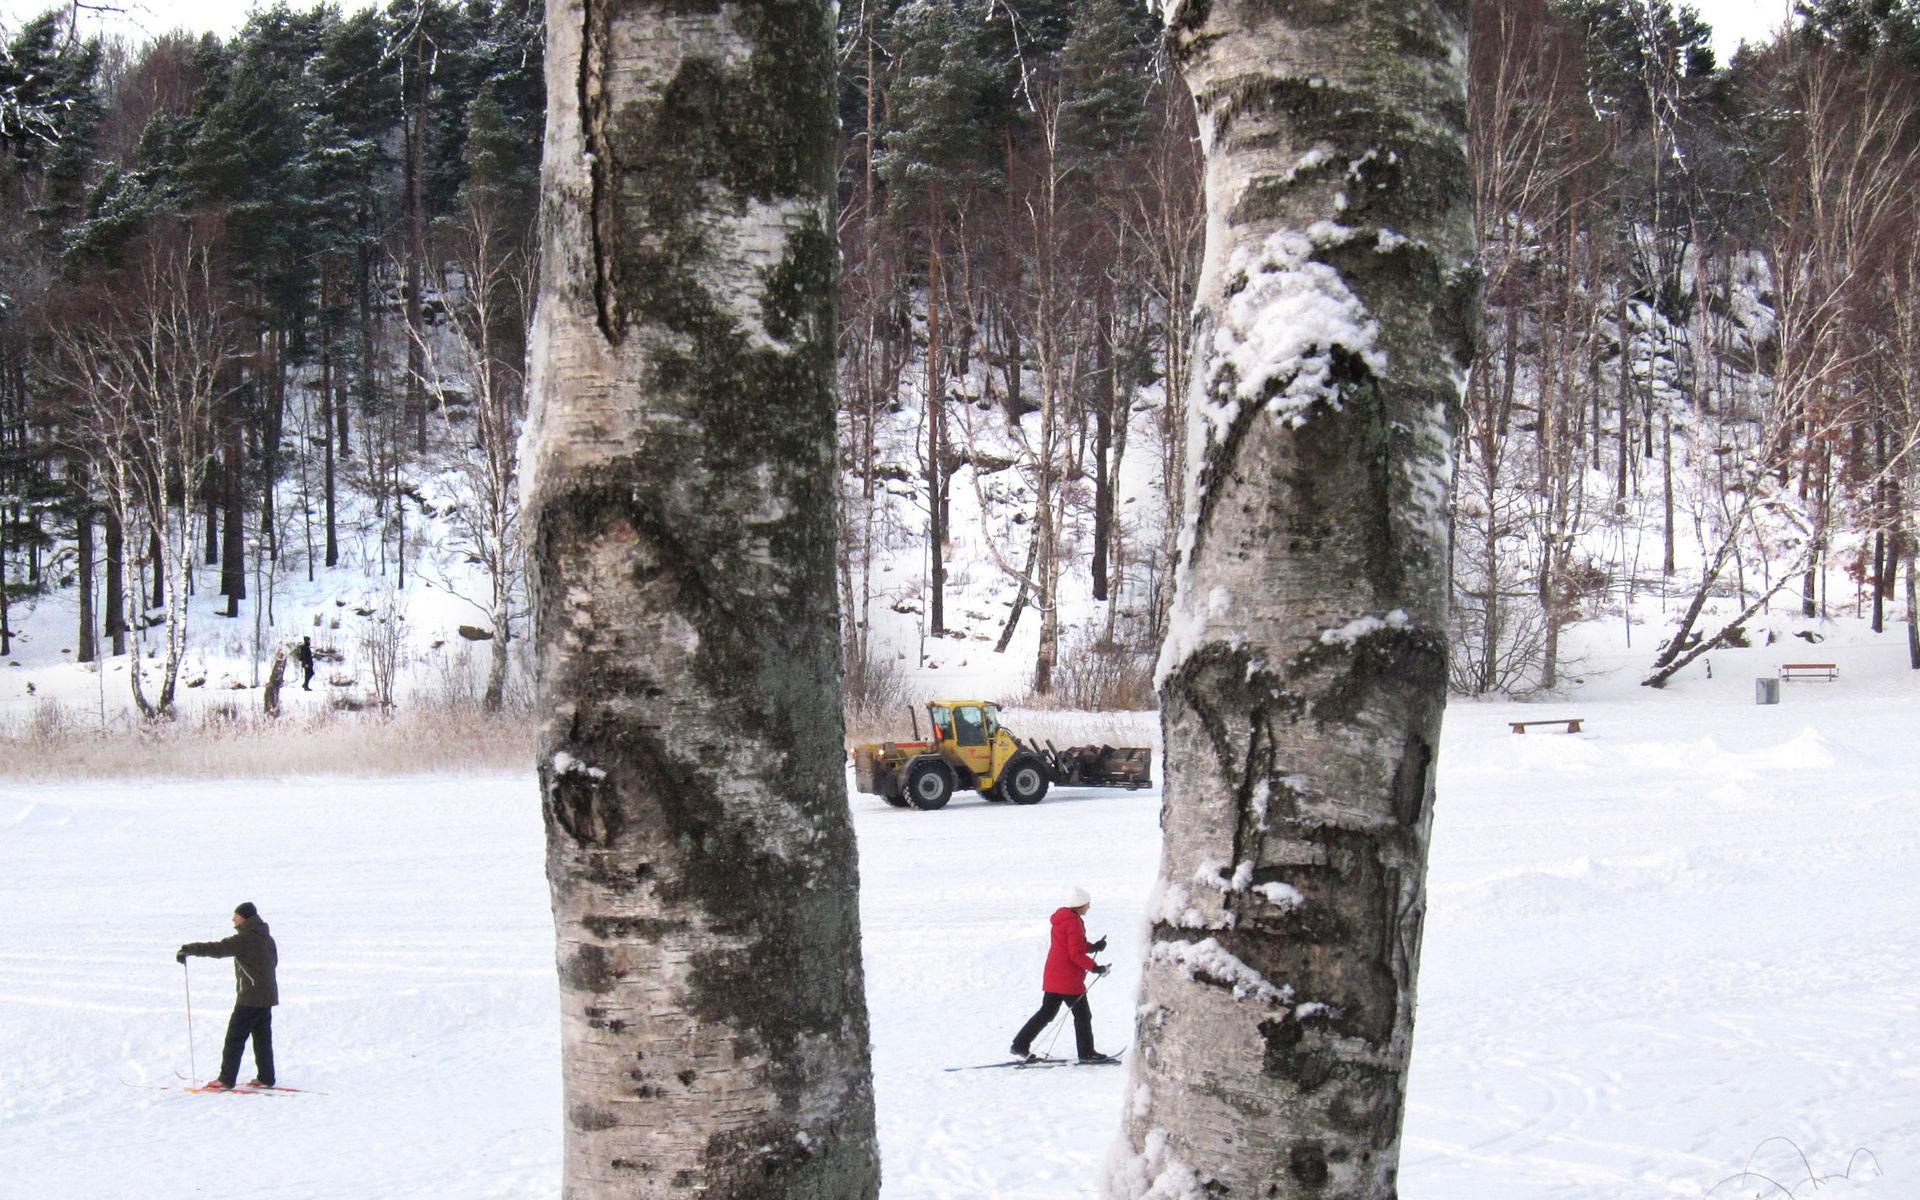  Vid julen 2010 kunde man åka skidor på Härlandatjärn.